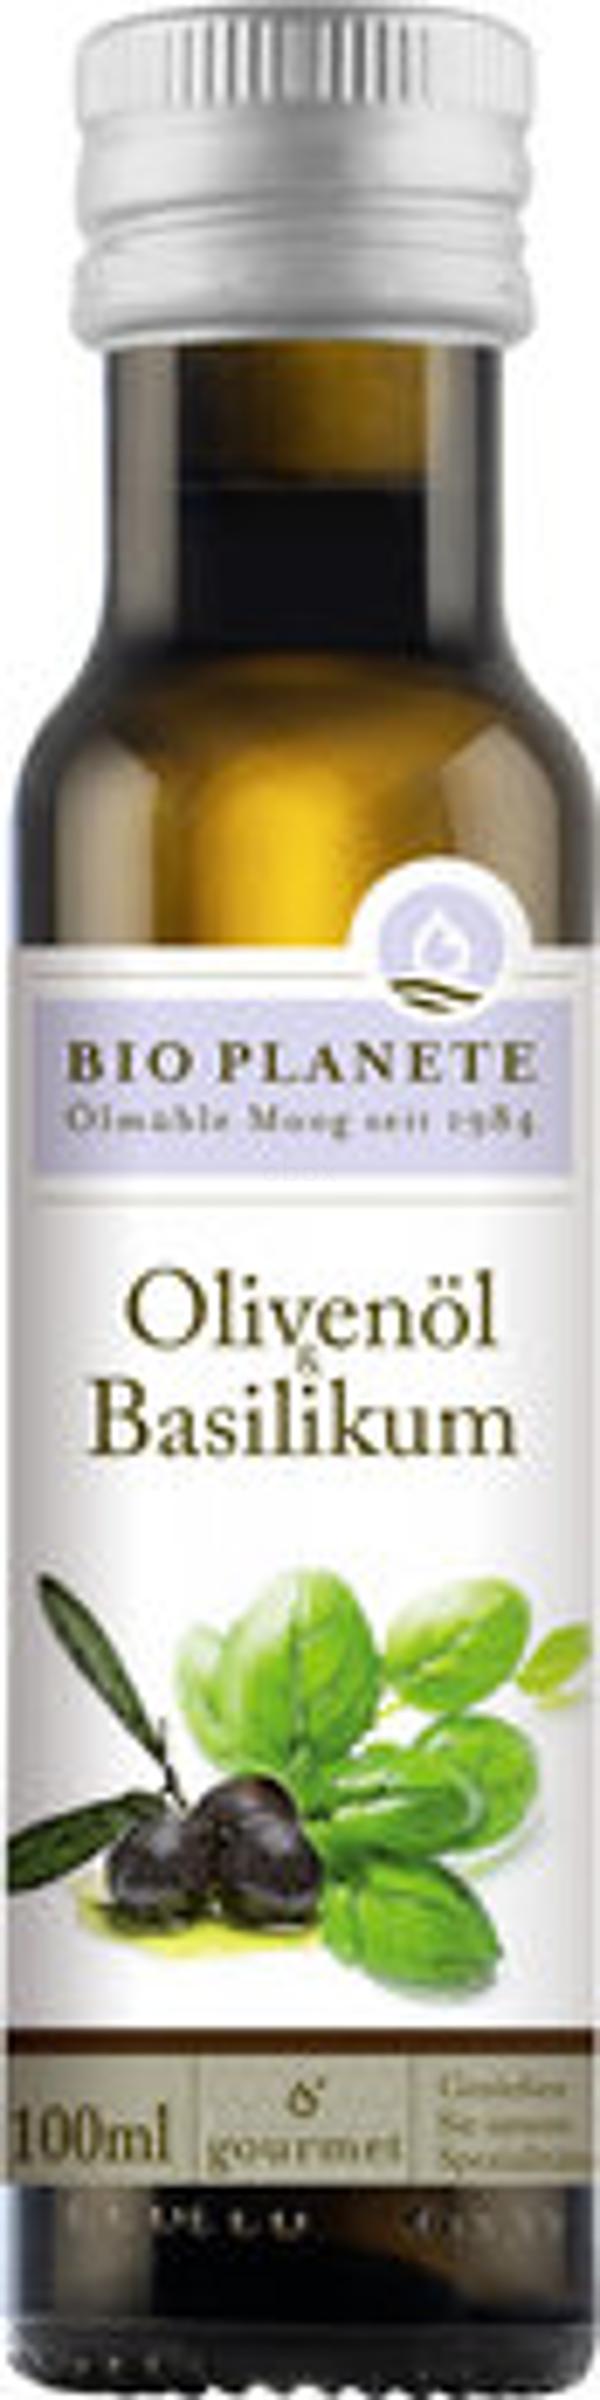 Produktfoto zu Olivenöl Basilikum 100ml